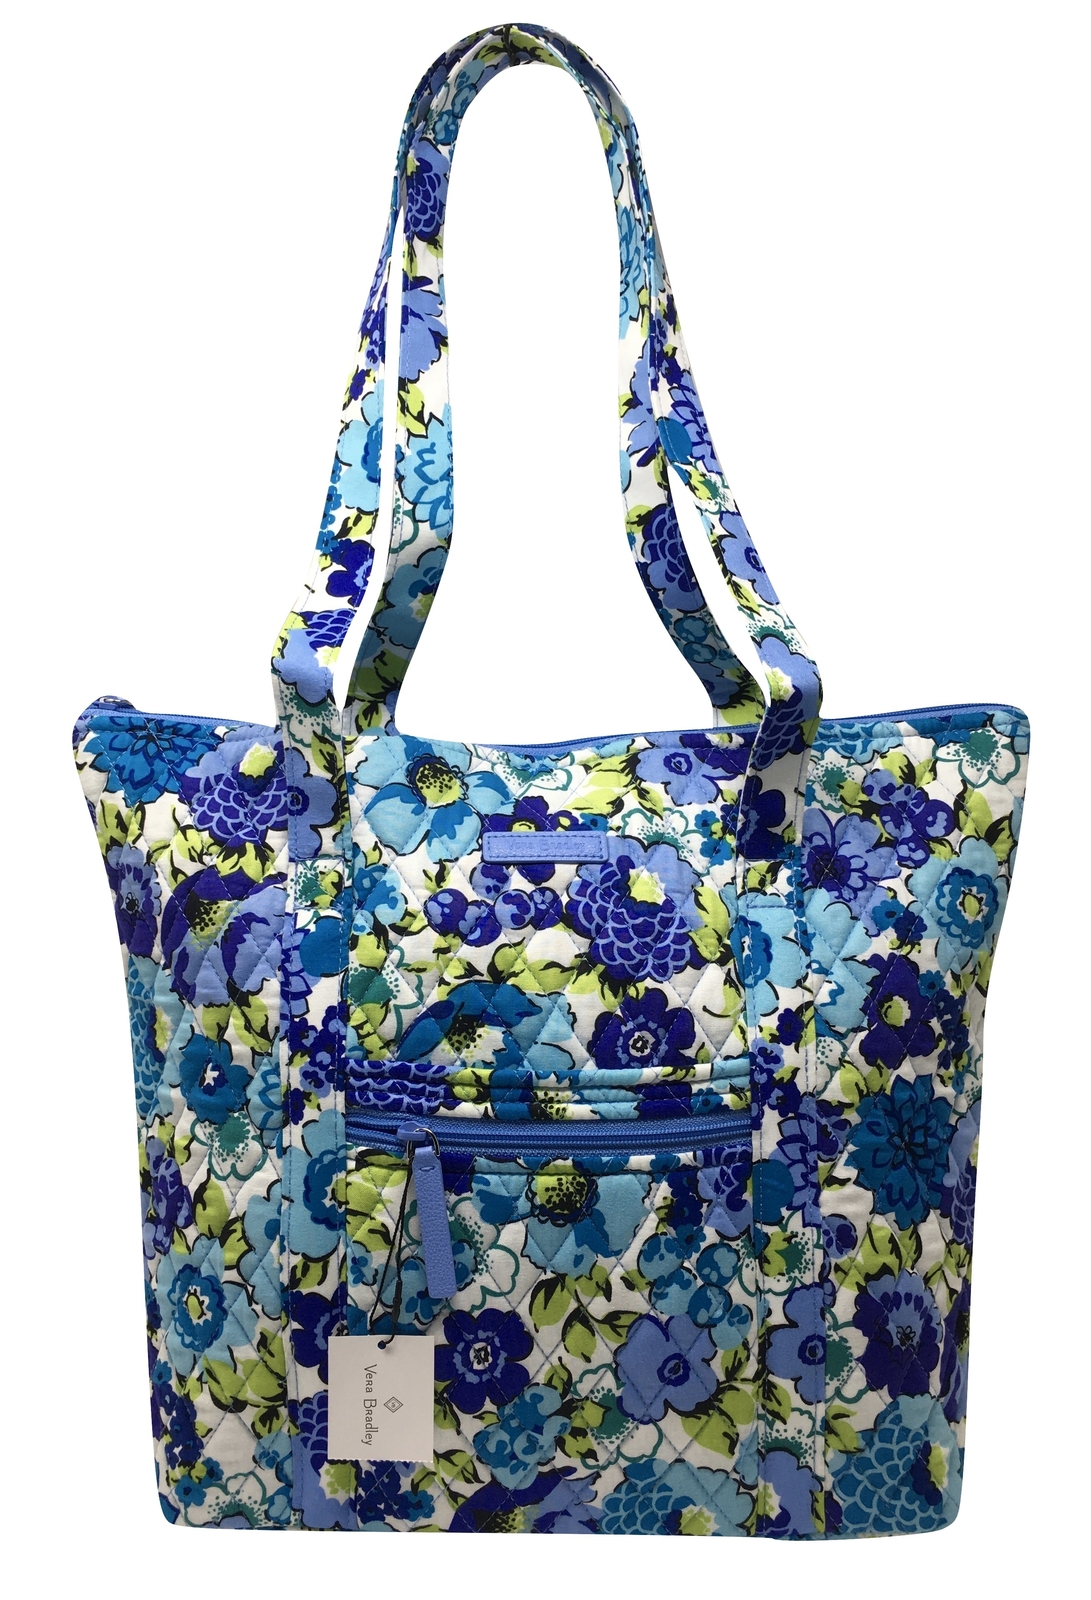 Vera Bradley Villager Tote Shoulder Bag in Blueberry Blooms - NWT - $78 ...